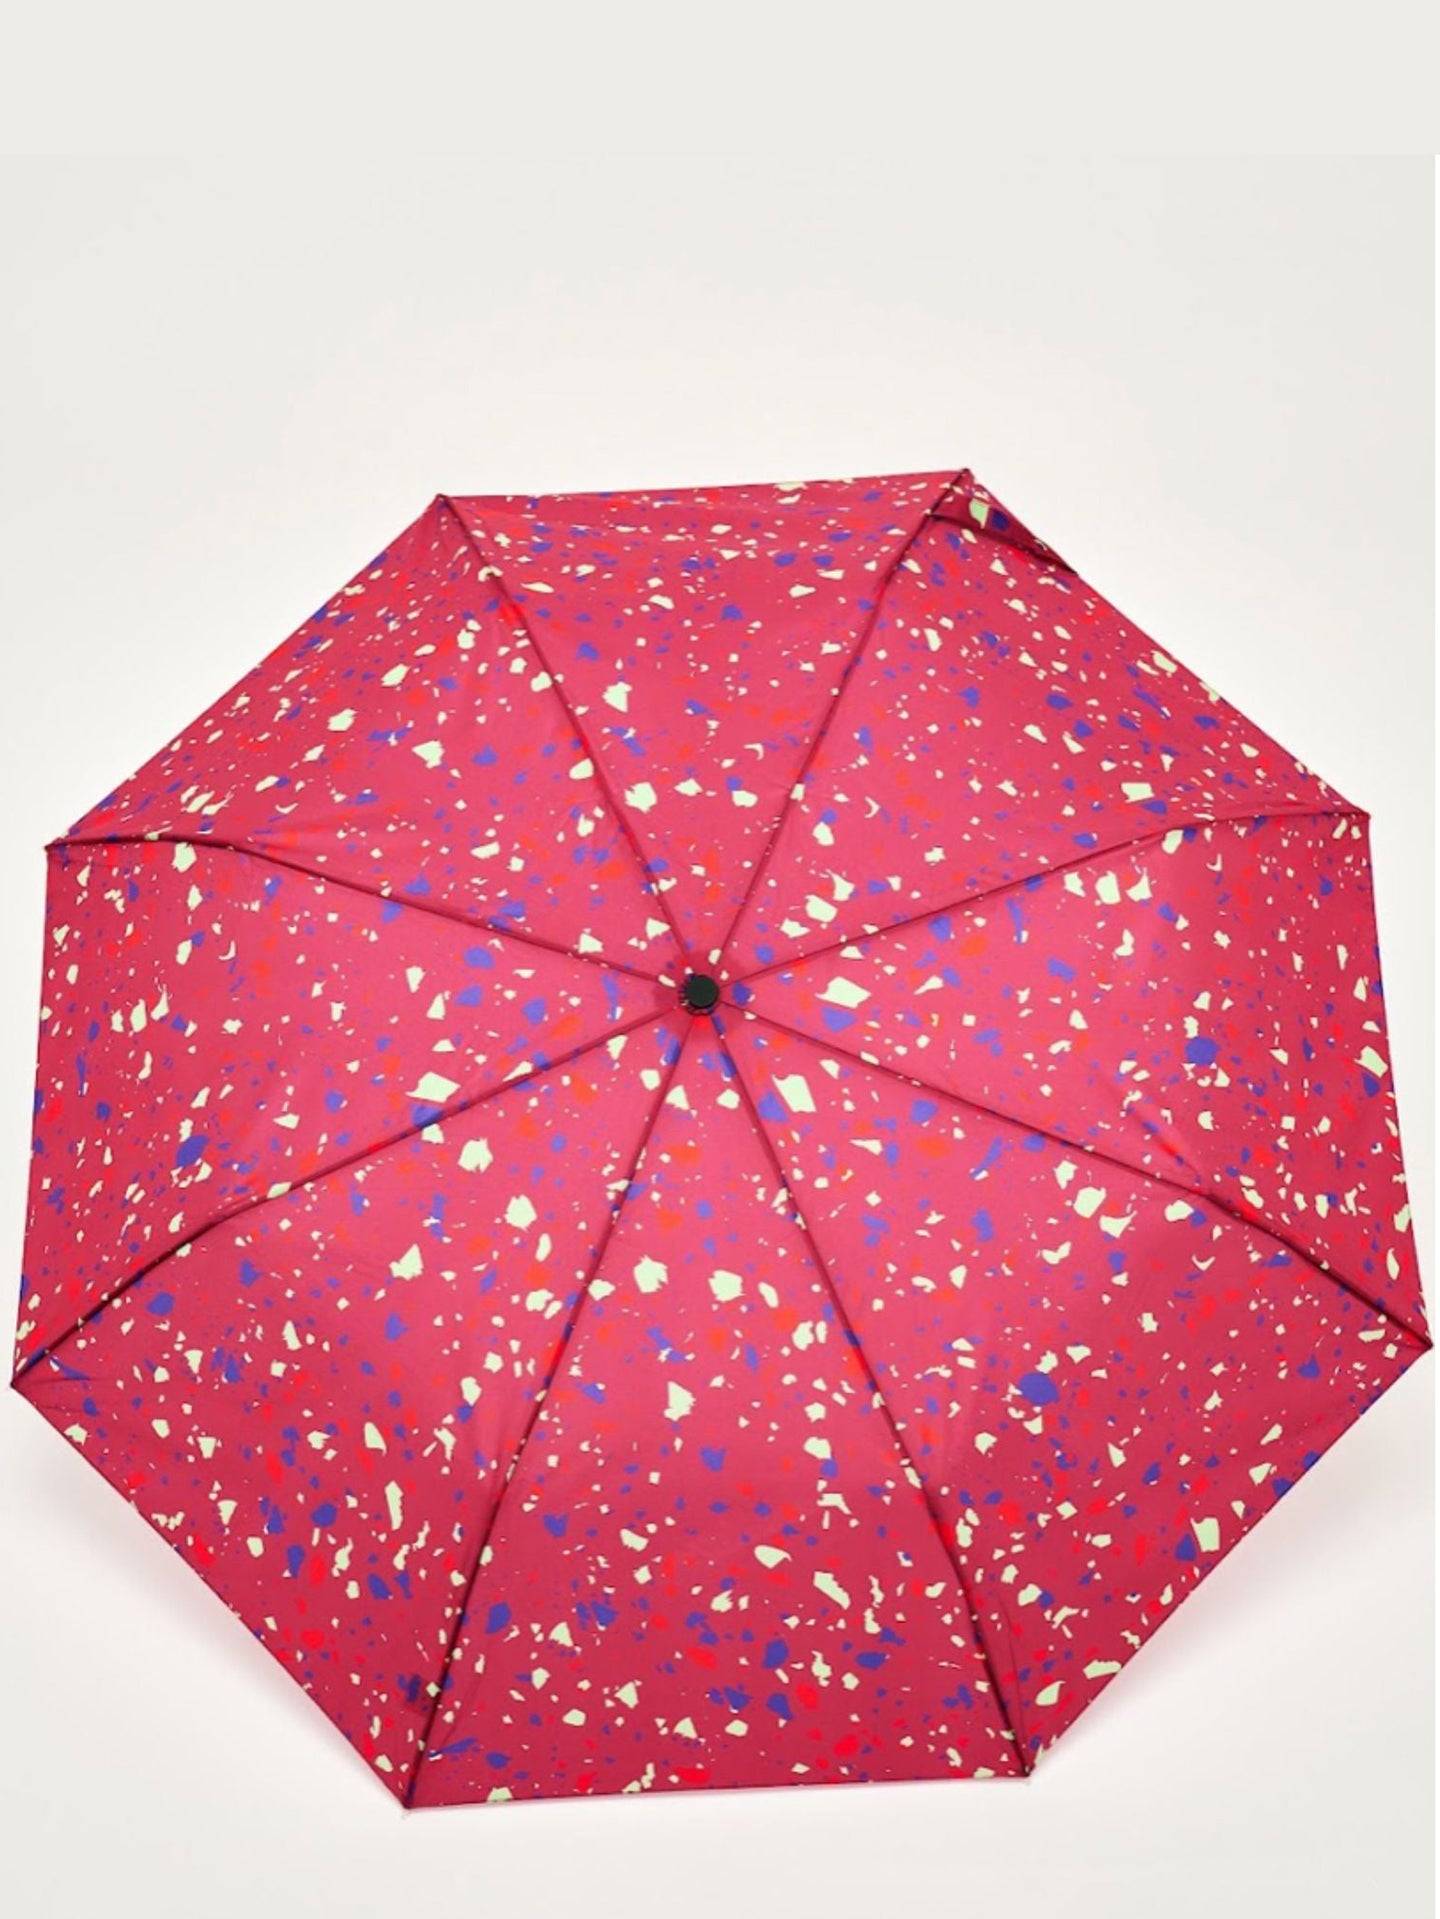 Duck Umbrella, Terraz pink